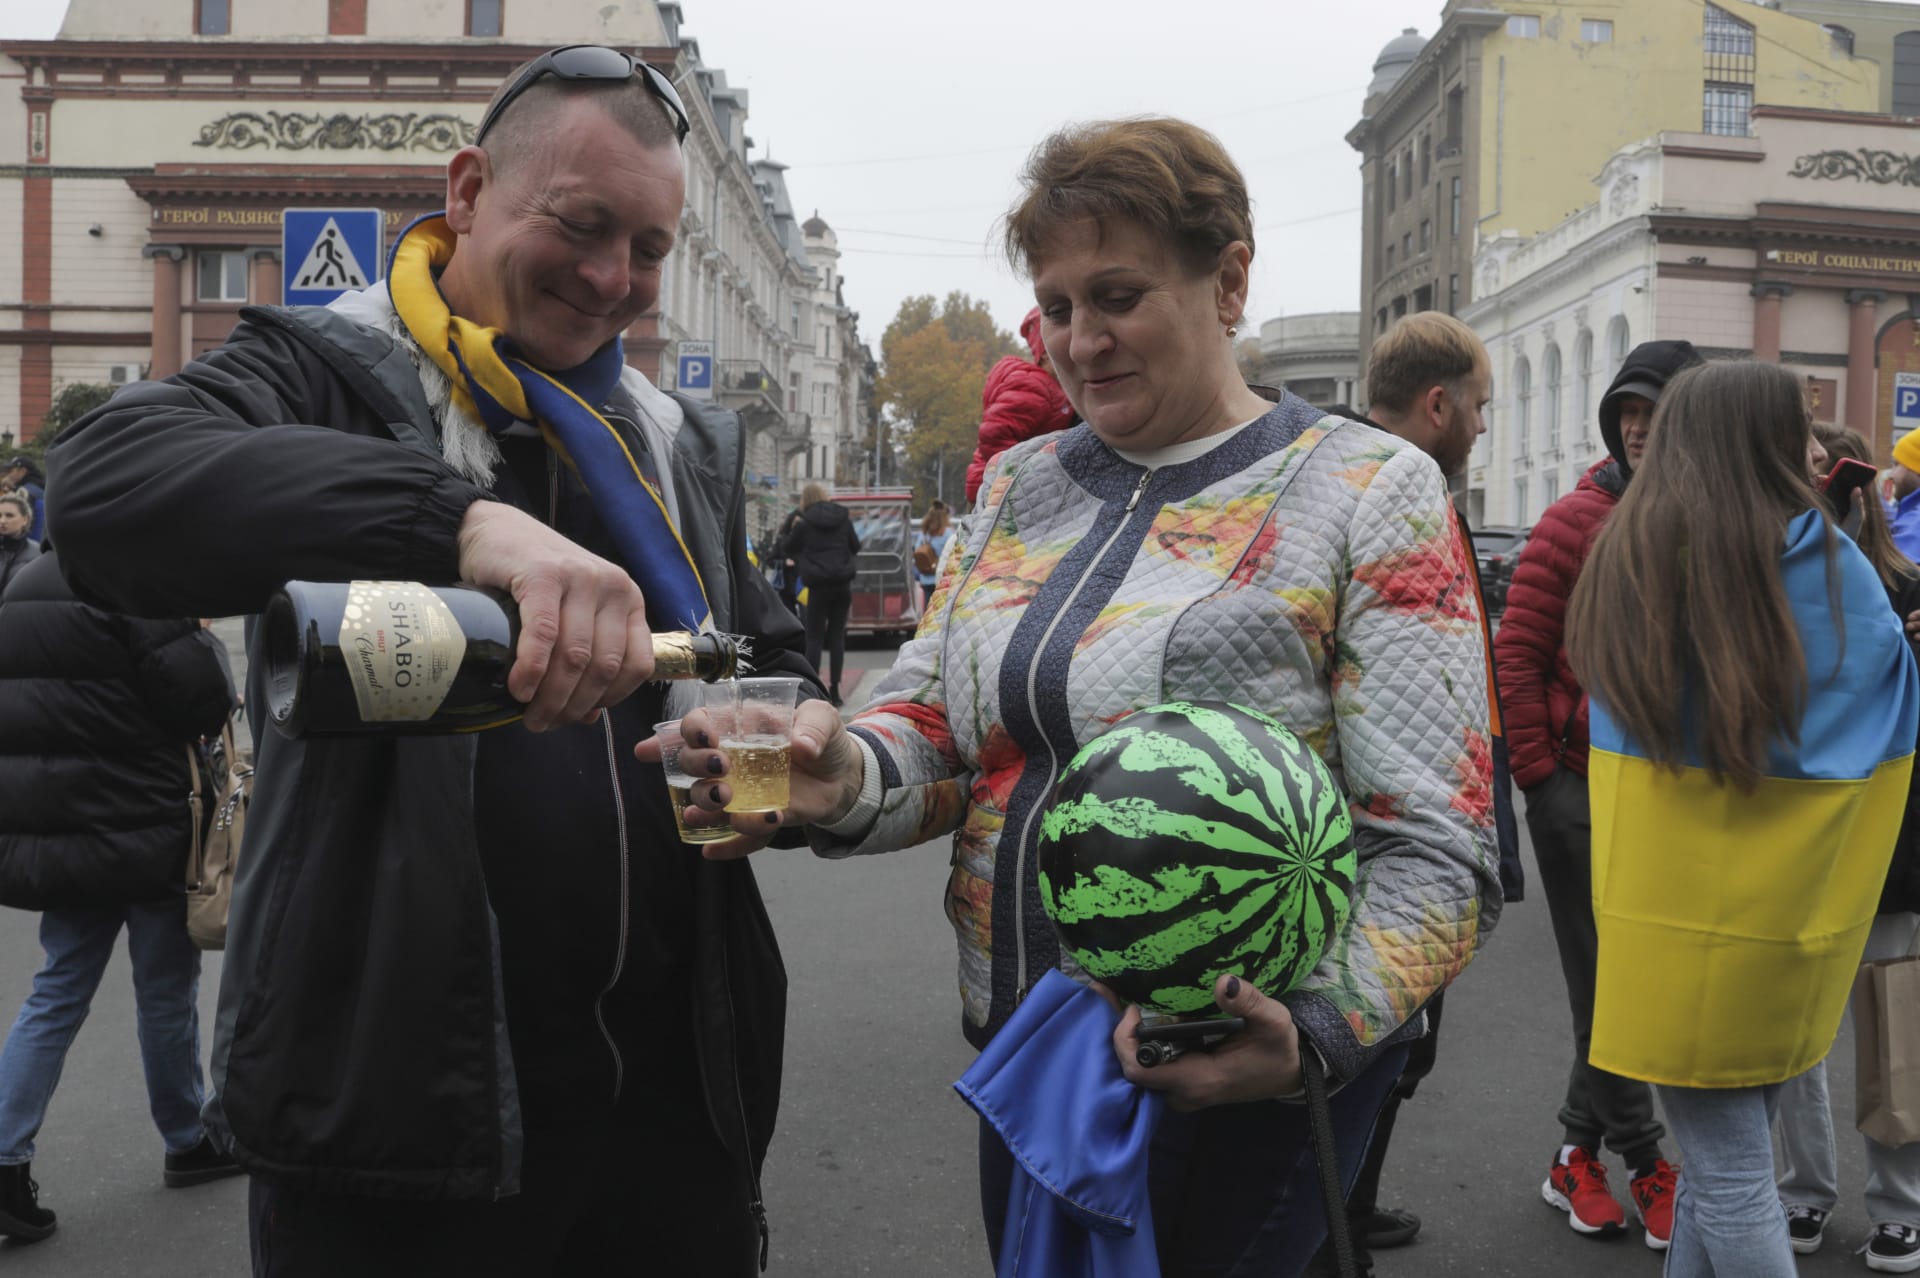 Ukrajinci se shromažďují v centru města na oslavu znovudobytí Chersonu